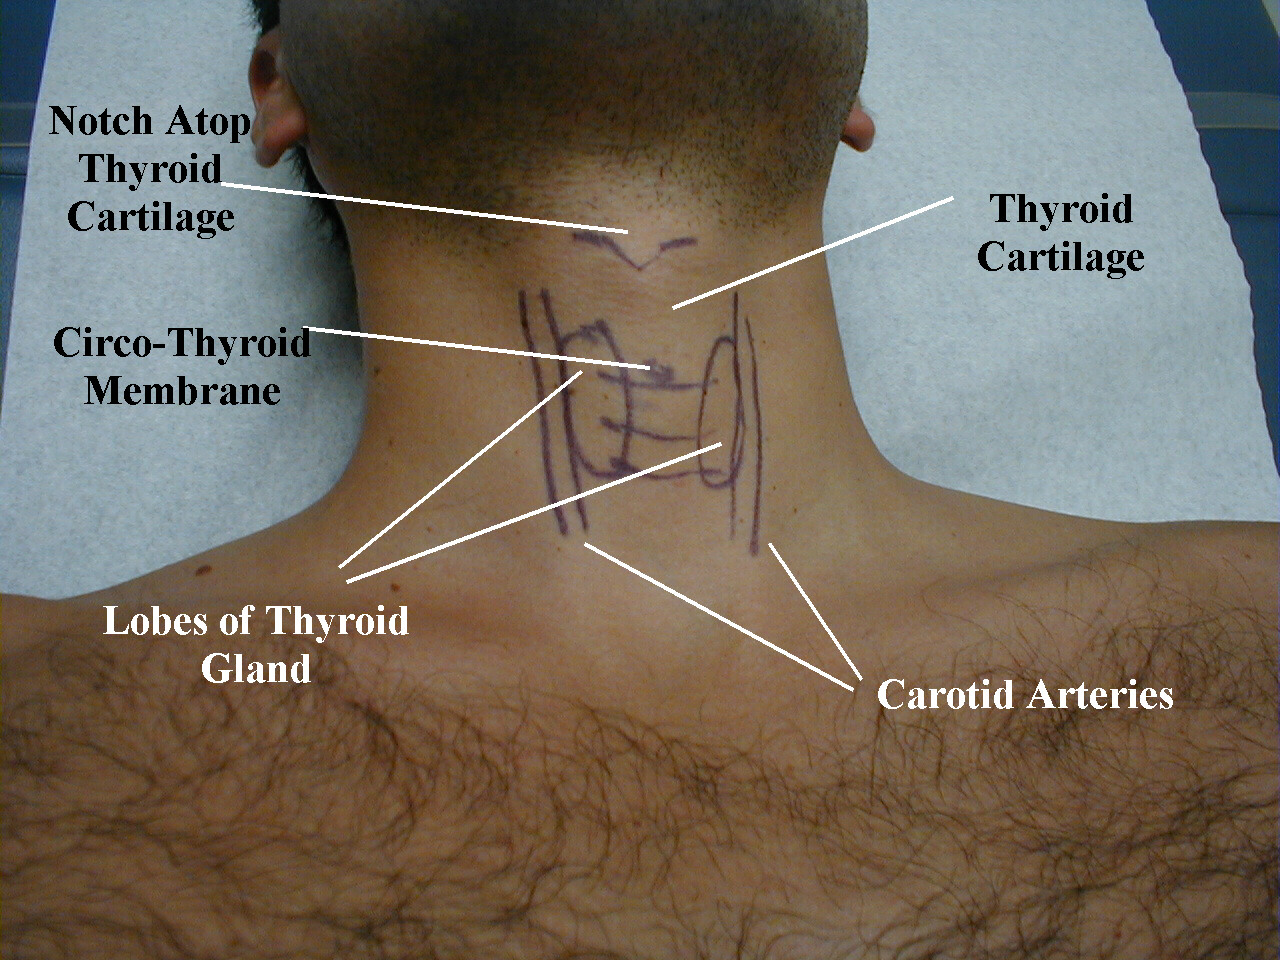 thyroid anatomy